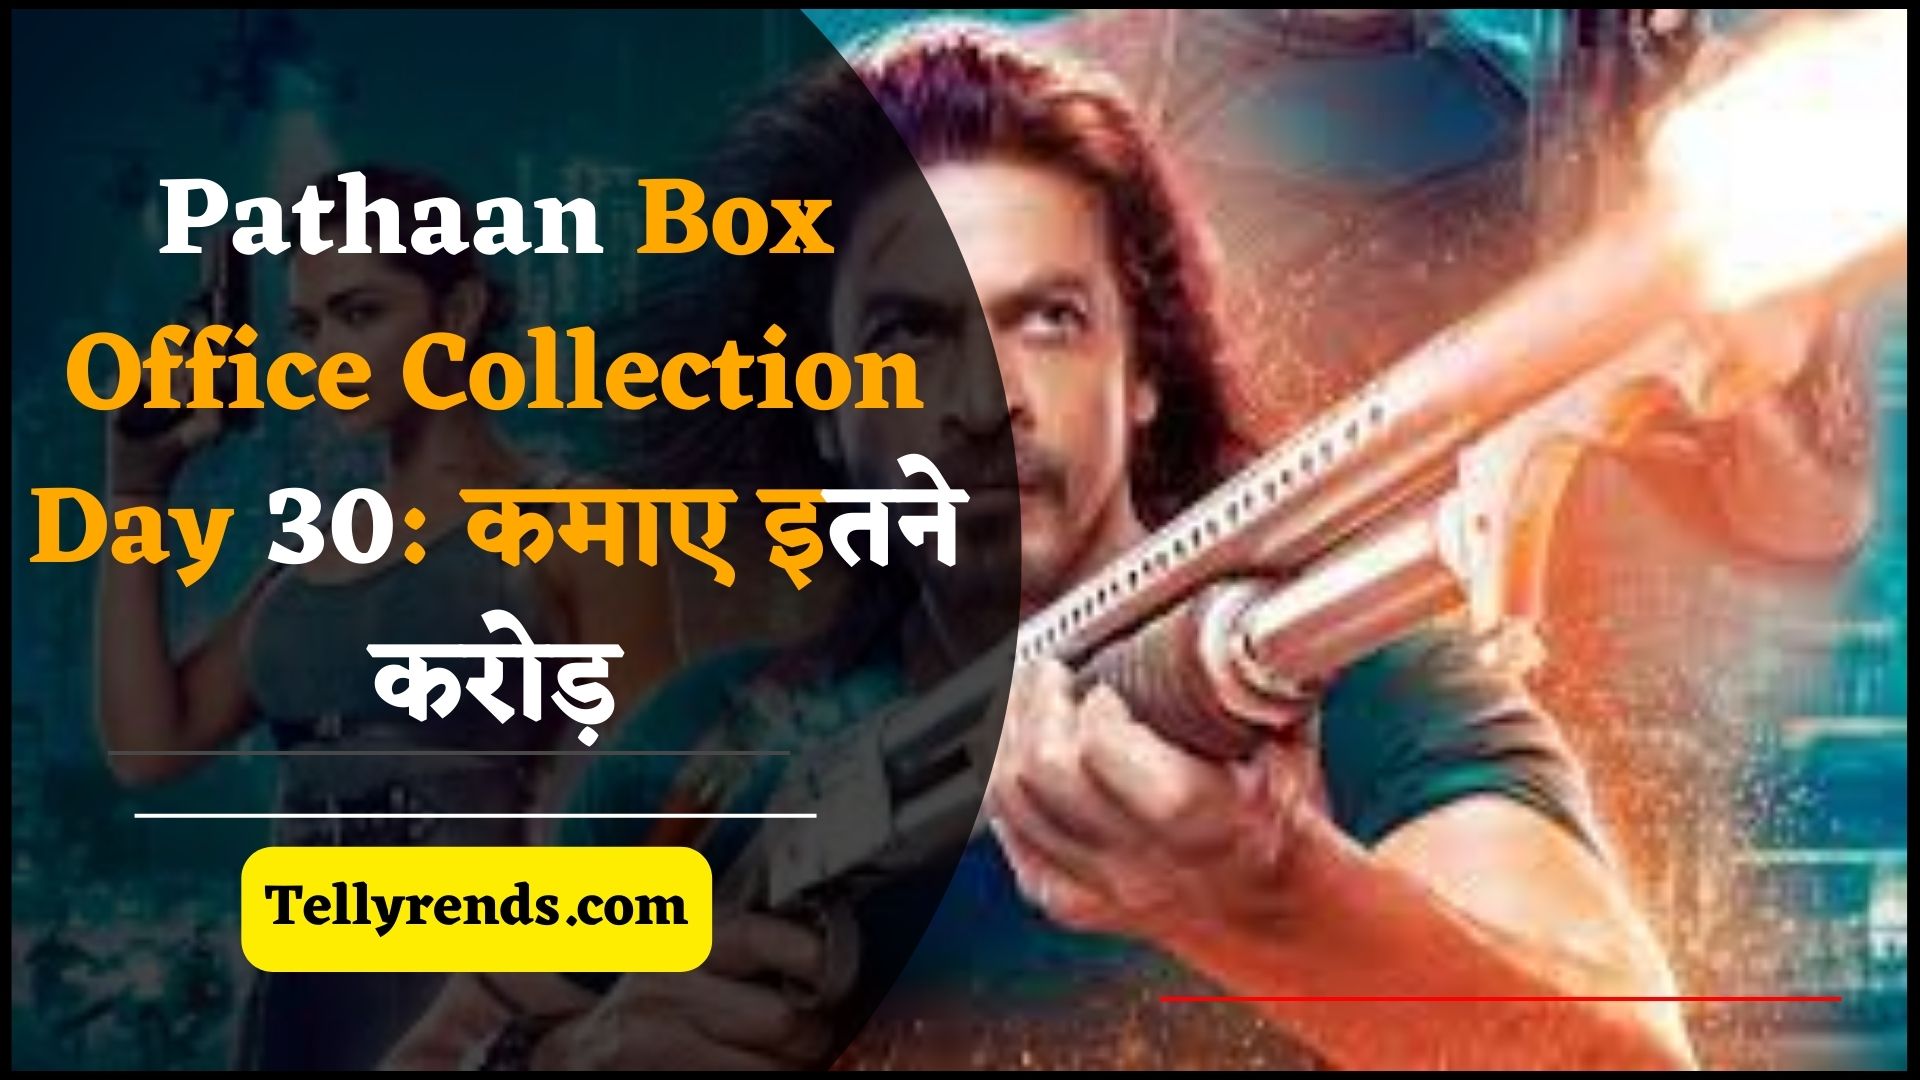 Pathaan Box Office Collection Day 30: फिल्म ने बॉक्स ऑफिस पर कमाए इतने करोड़